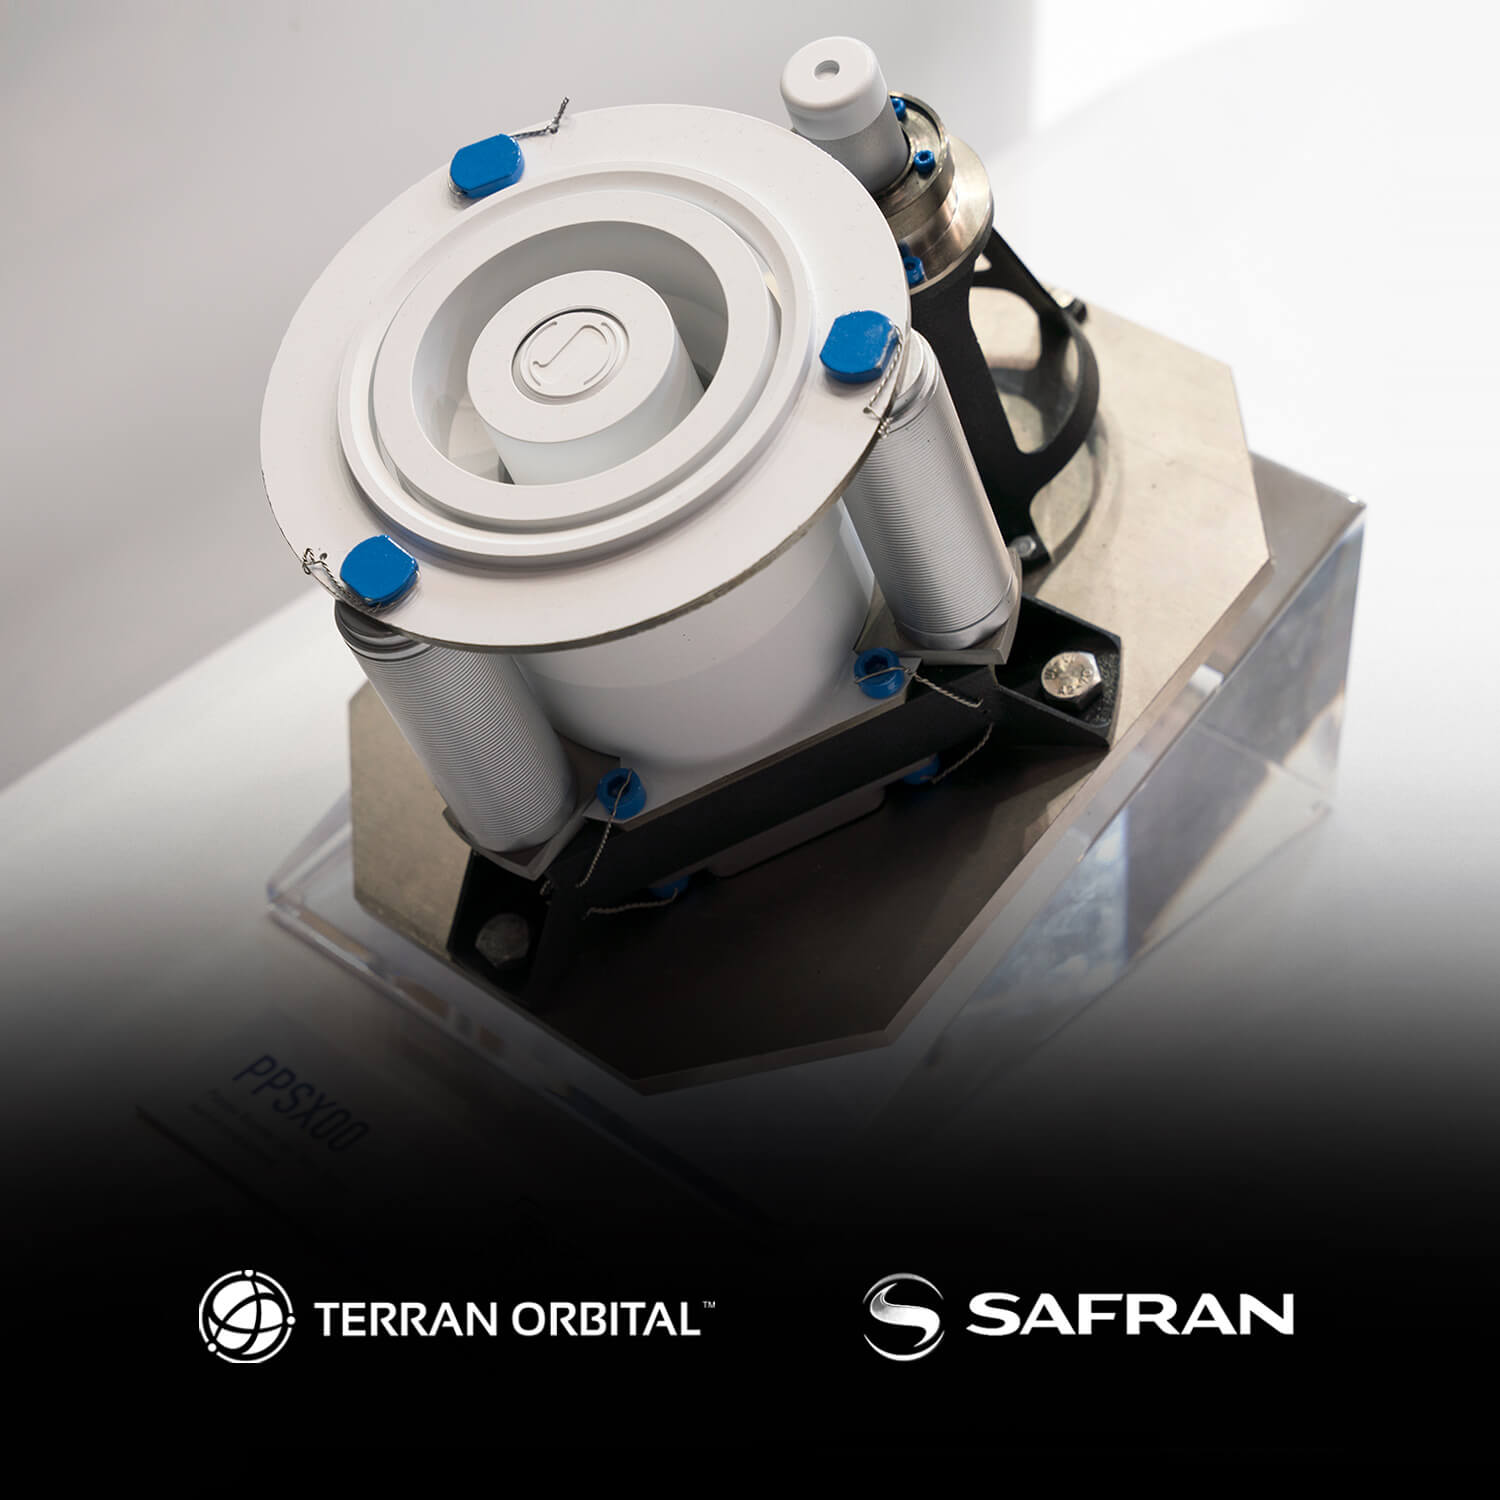 Safran Terran Orbital